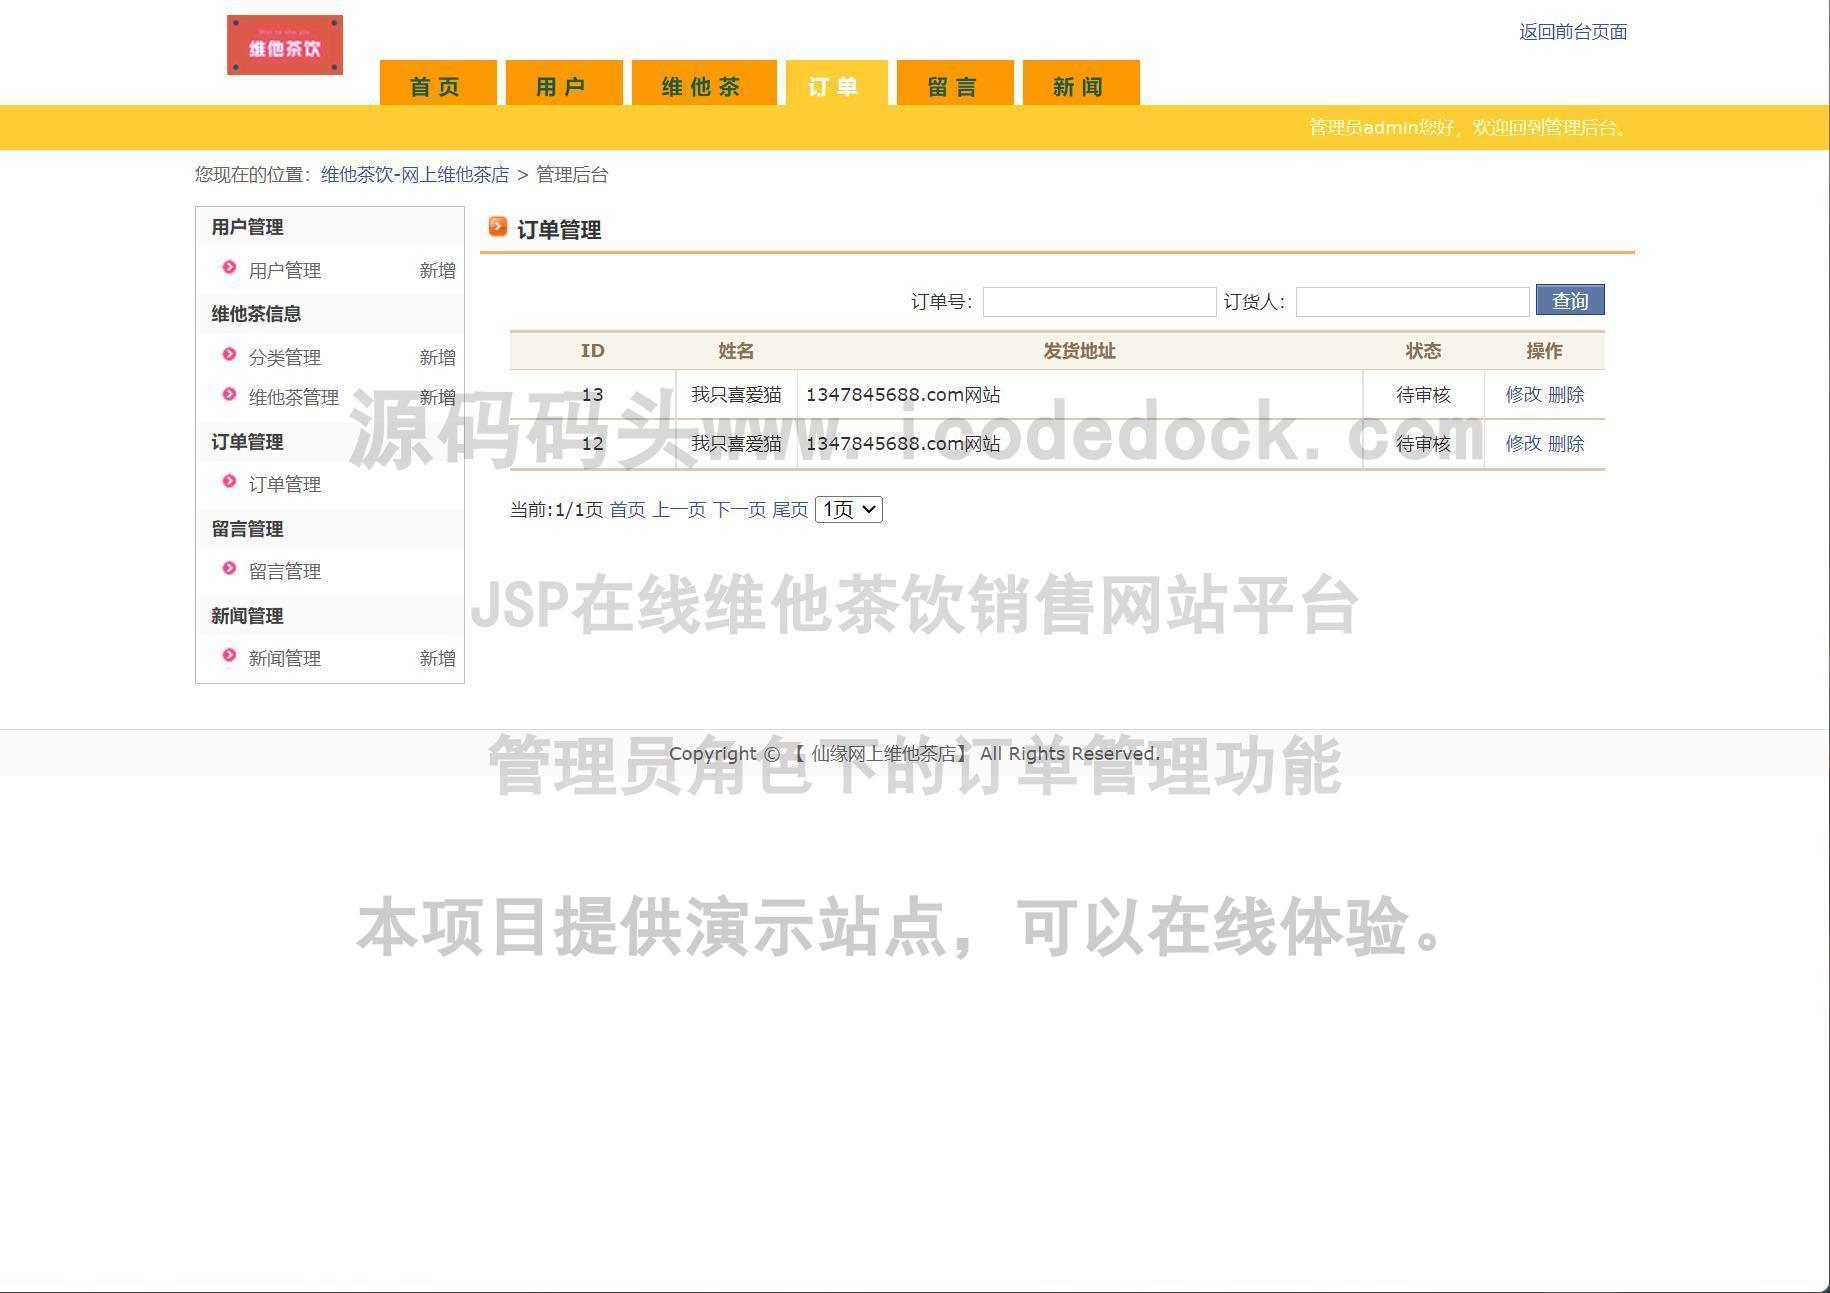 源码码头-JSP在线维他茶饮销售网站平台-管理员角色-订单管理